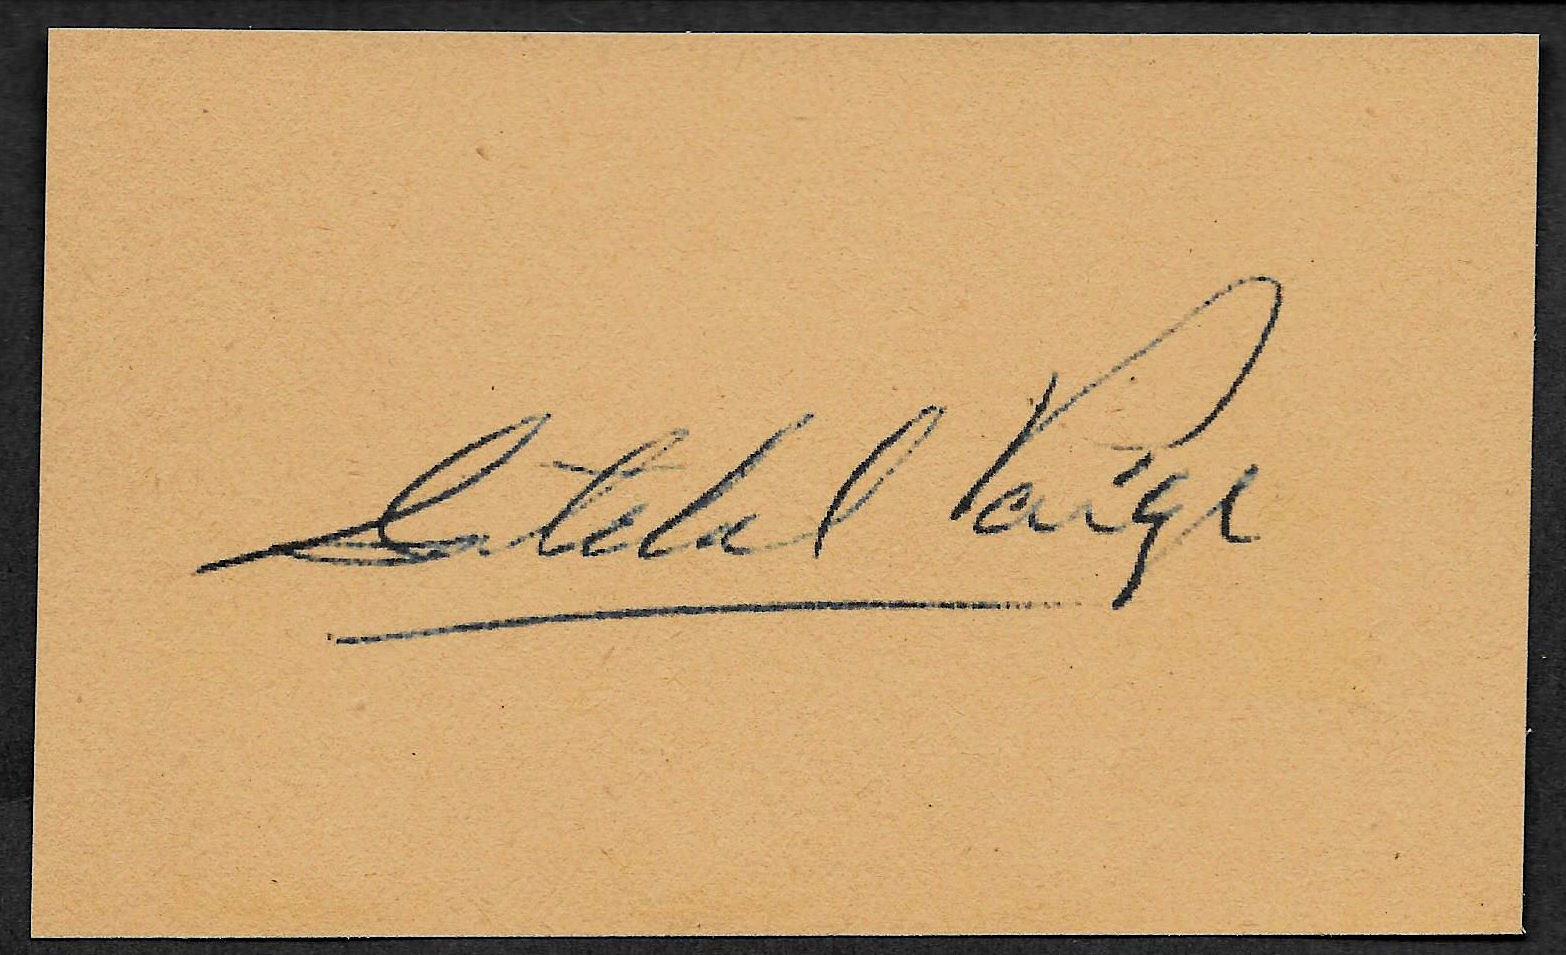 Satchel Paige Autograph Reprint On Genuine Original Period 1950s 3x5 Card